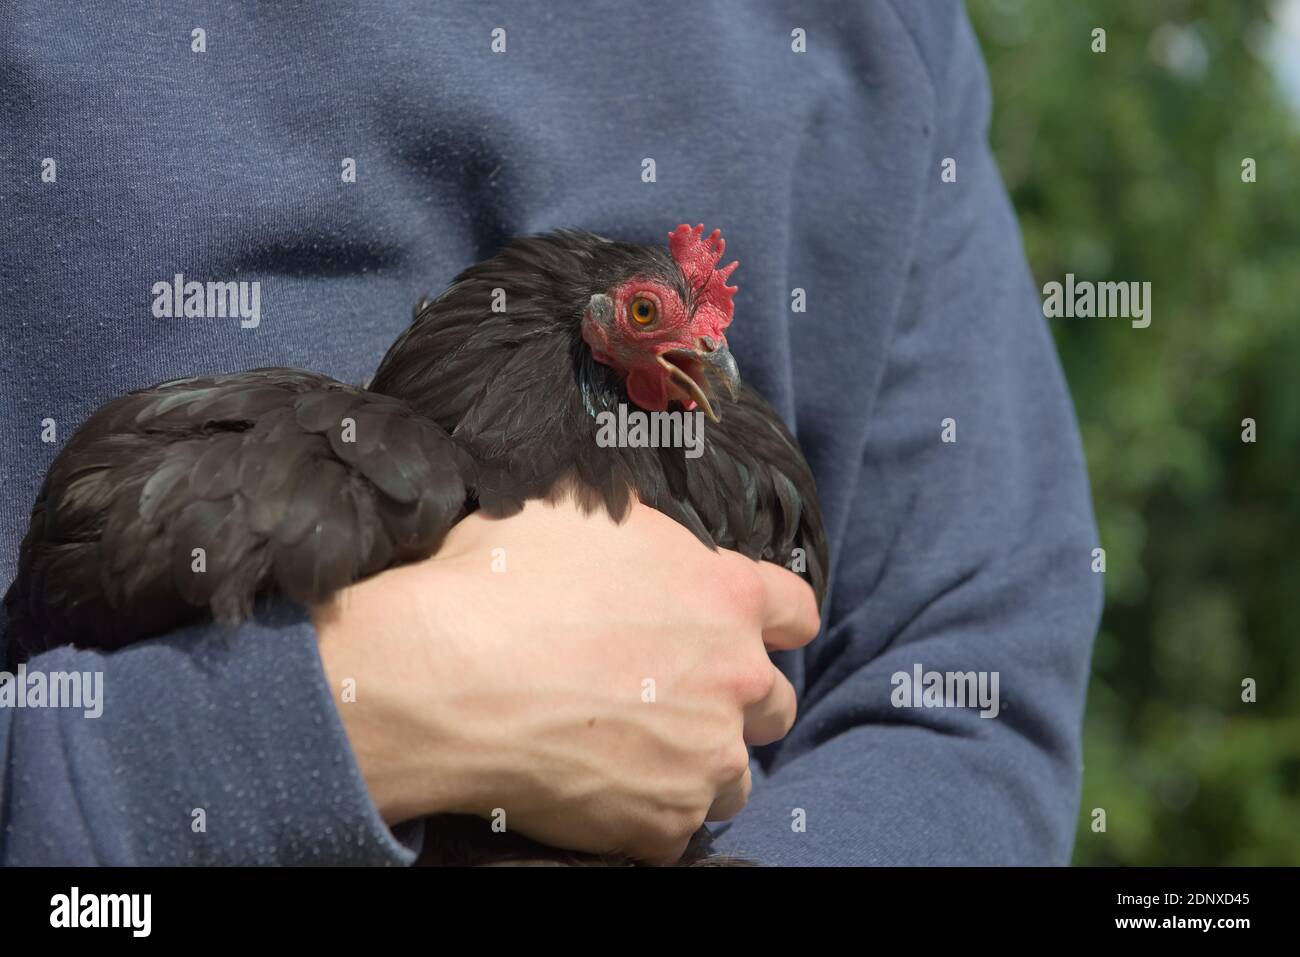 2 - petite poule de poulet noir pekin bantam squaks bruyamment comme elle est tenue dans les bras de son jeune propriétaire. Soleil d'été éclatant avec cavalier bleu. Banque D'Images